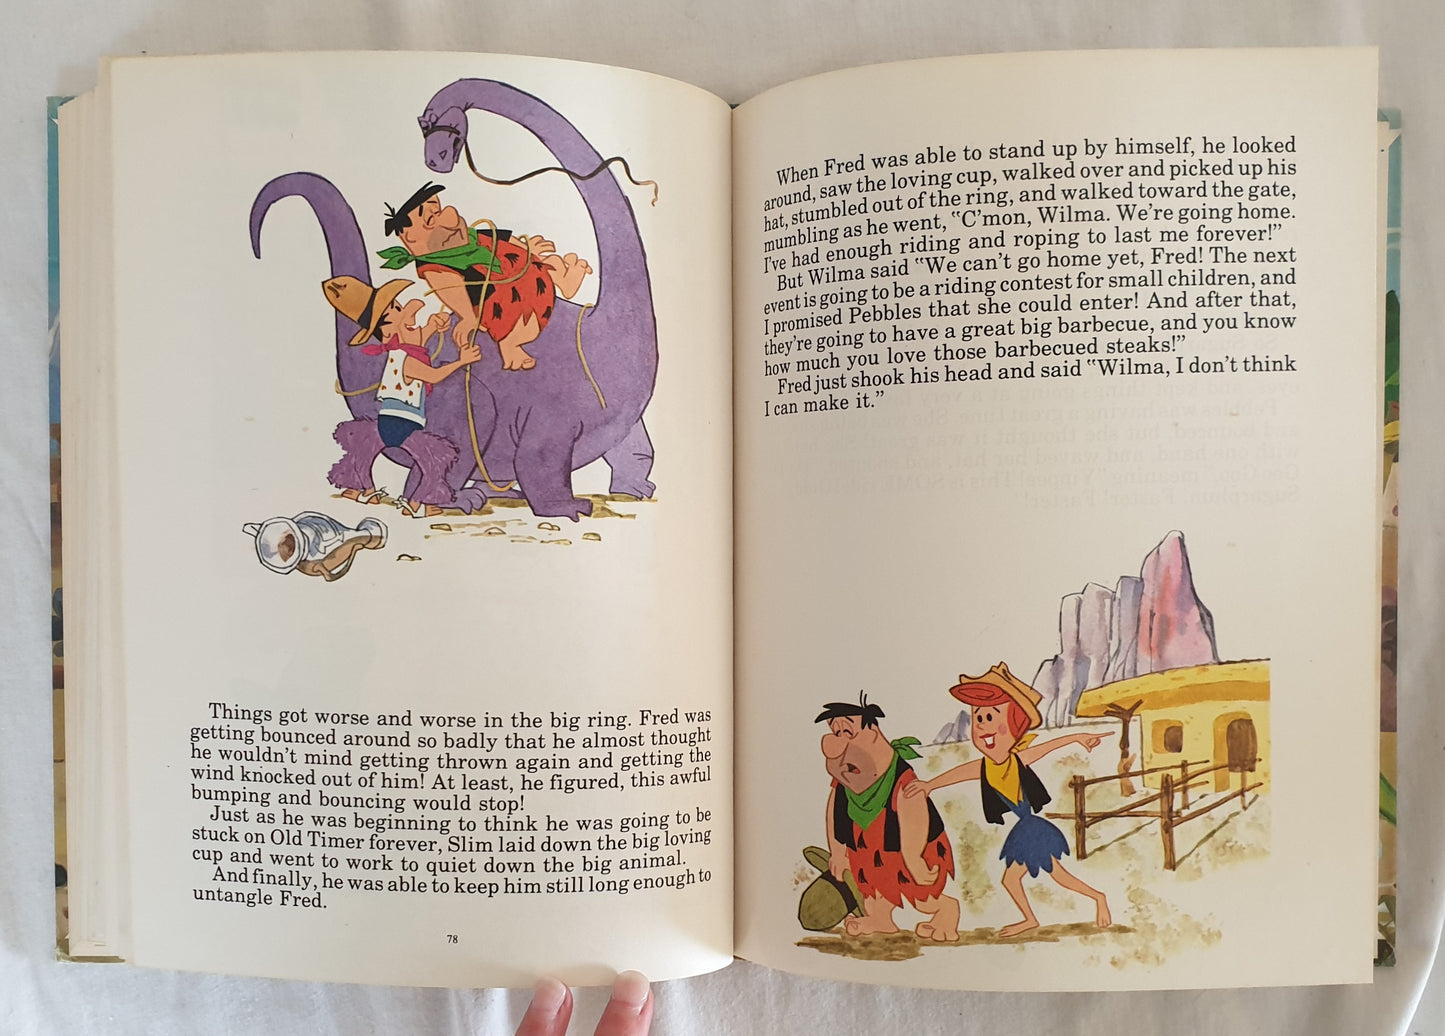 Flintstone Story Book by Horace J. Elias